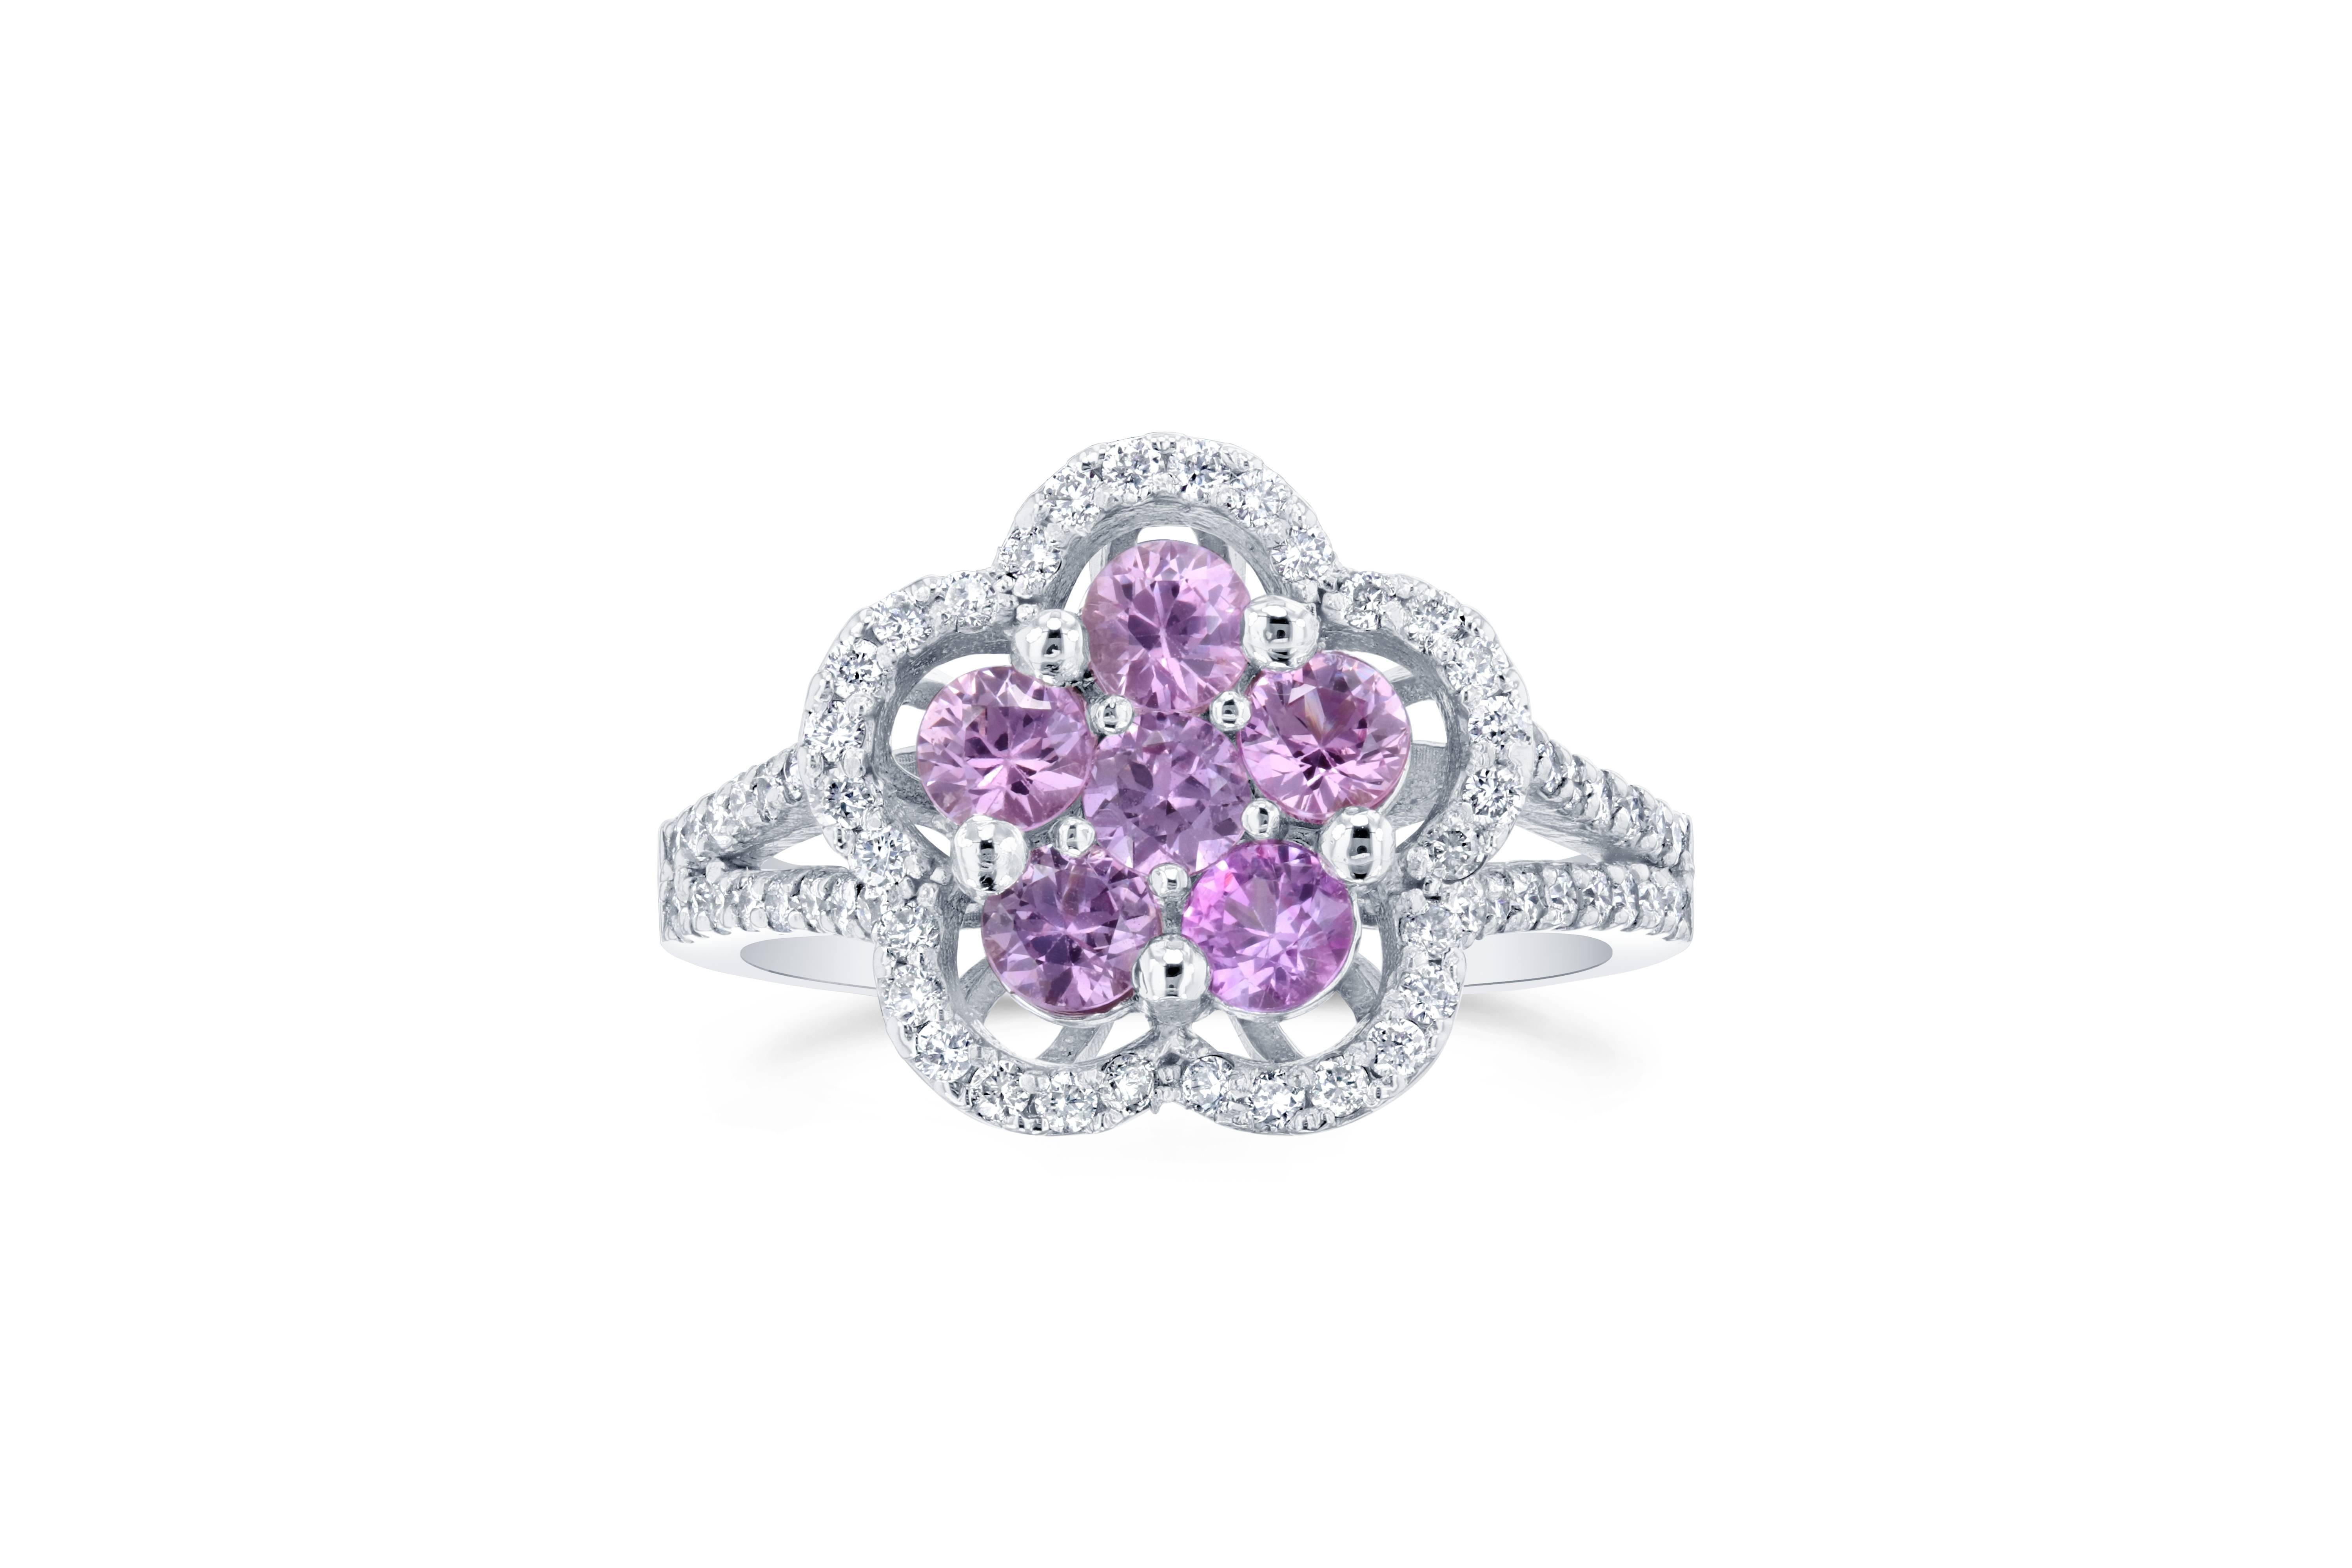 Dieser Ring hat 6 rosa Saphire in der Mitte des Rings, die insgesamt 1,06 Karat wiegen und ist umgeben von 62 runden Diamanten im Brillantschliff, die insgesamt 0,45 Karat wiegen. Das Gesamtkaratgewicht des Rings beträgt 1,51 Karat.

Der Ring ist